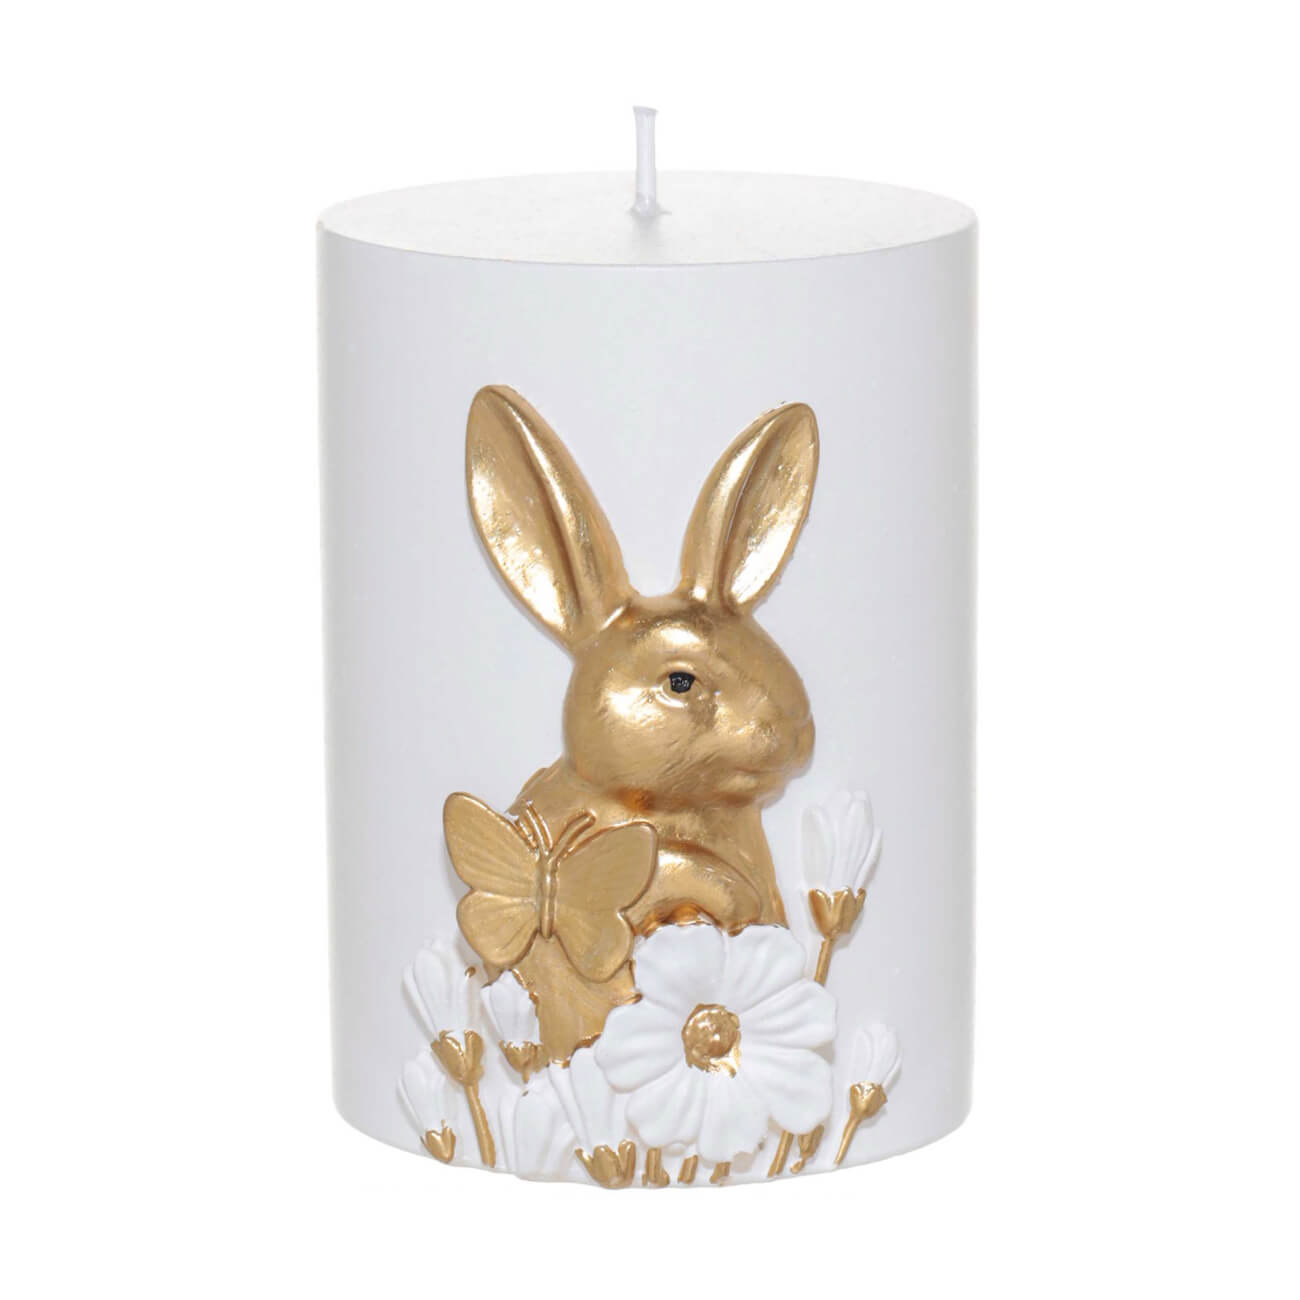 подставка для зубочисток 10 см фарфор p бело золотистая кролик easter gold Свеча, 9 см, цилиндрическая, бело-золотистая, Кролик с бабочкой, Easter gold